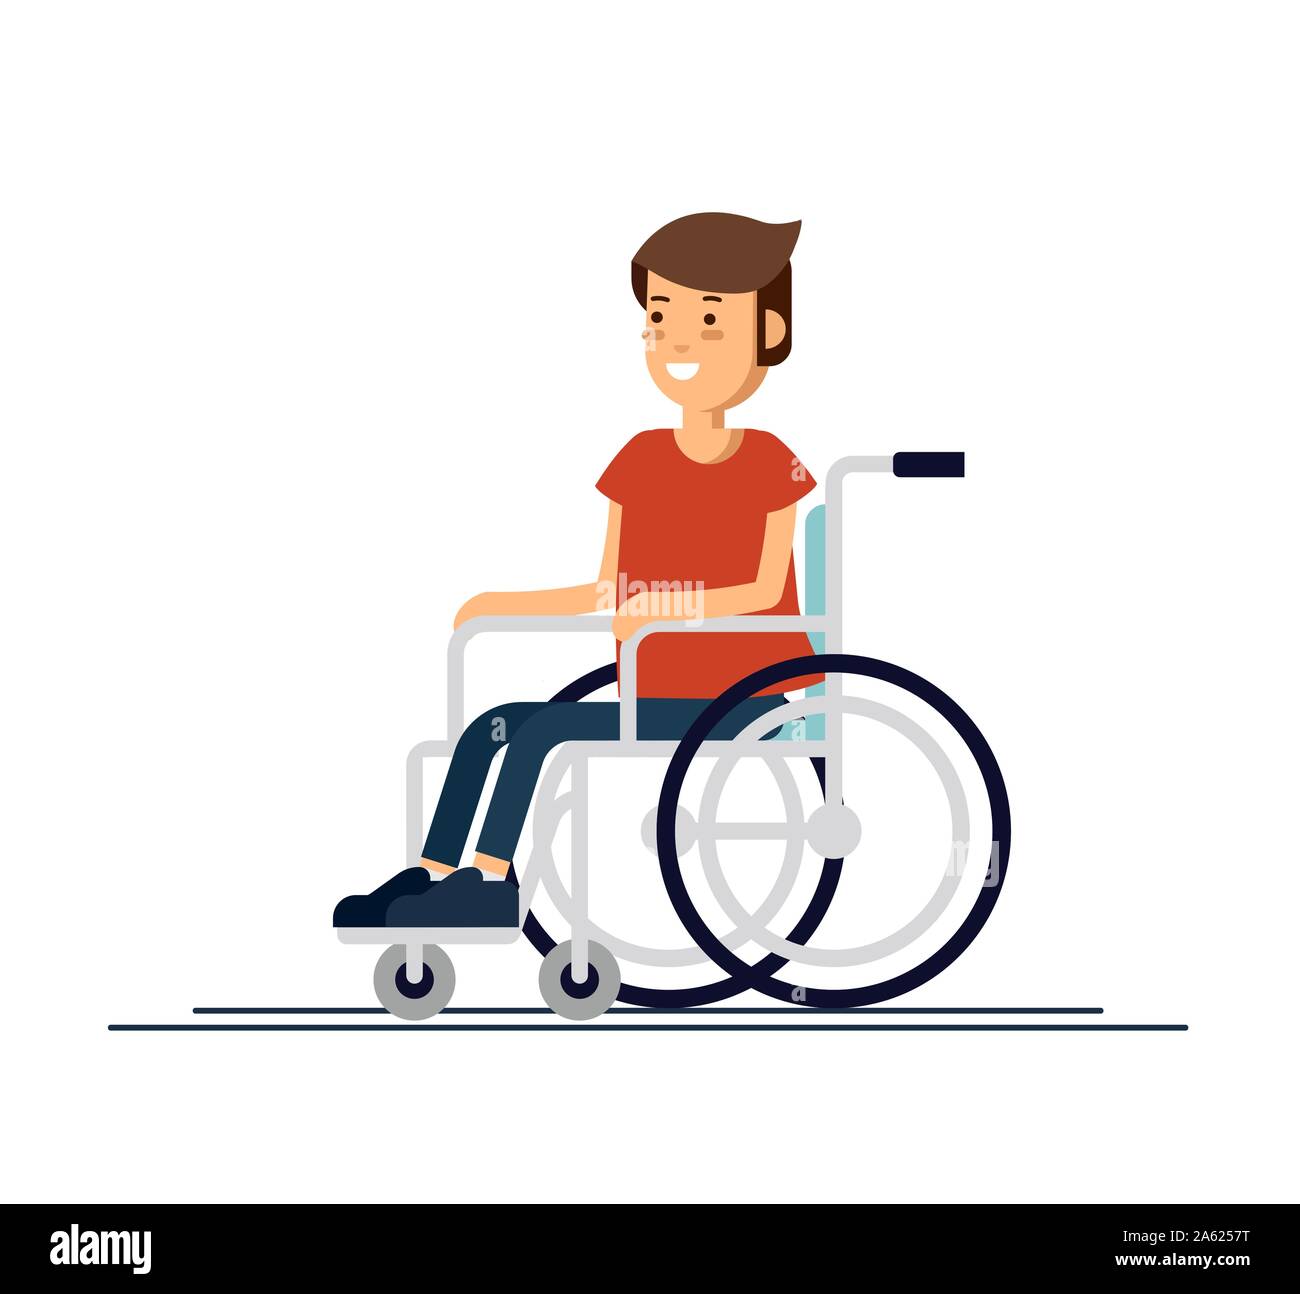 Cute kid garçon handicapé dans un fauteuil roulant. Personne handicapée.  Télévision en couleurs cartoon style vector illustration Image Vectorielle  Stock - Alamy